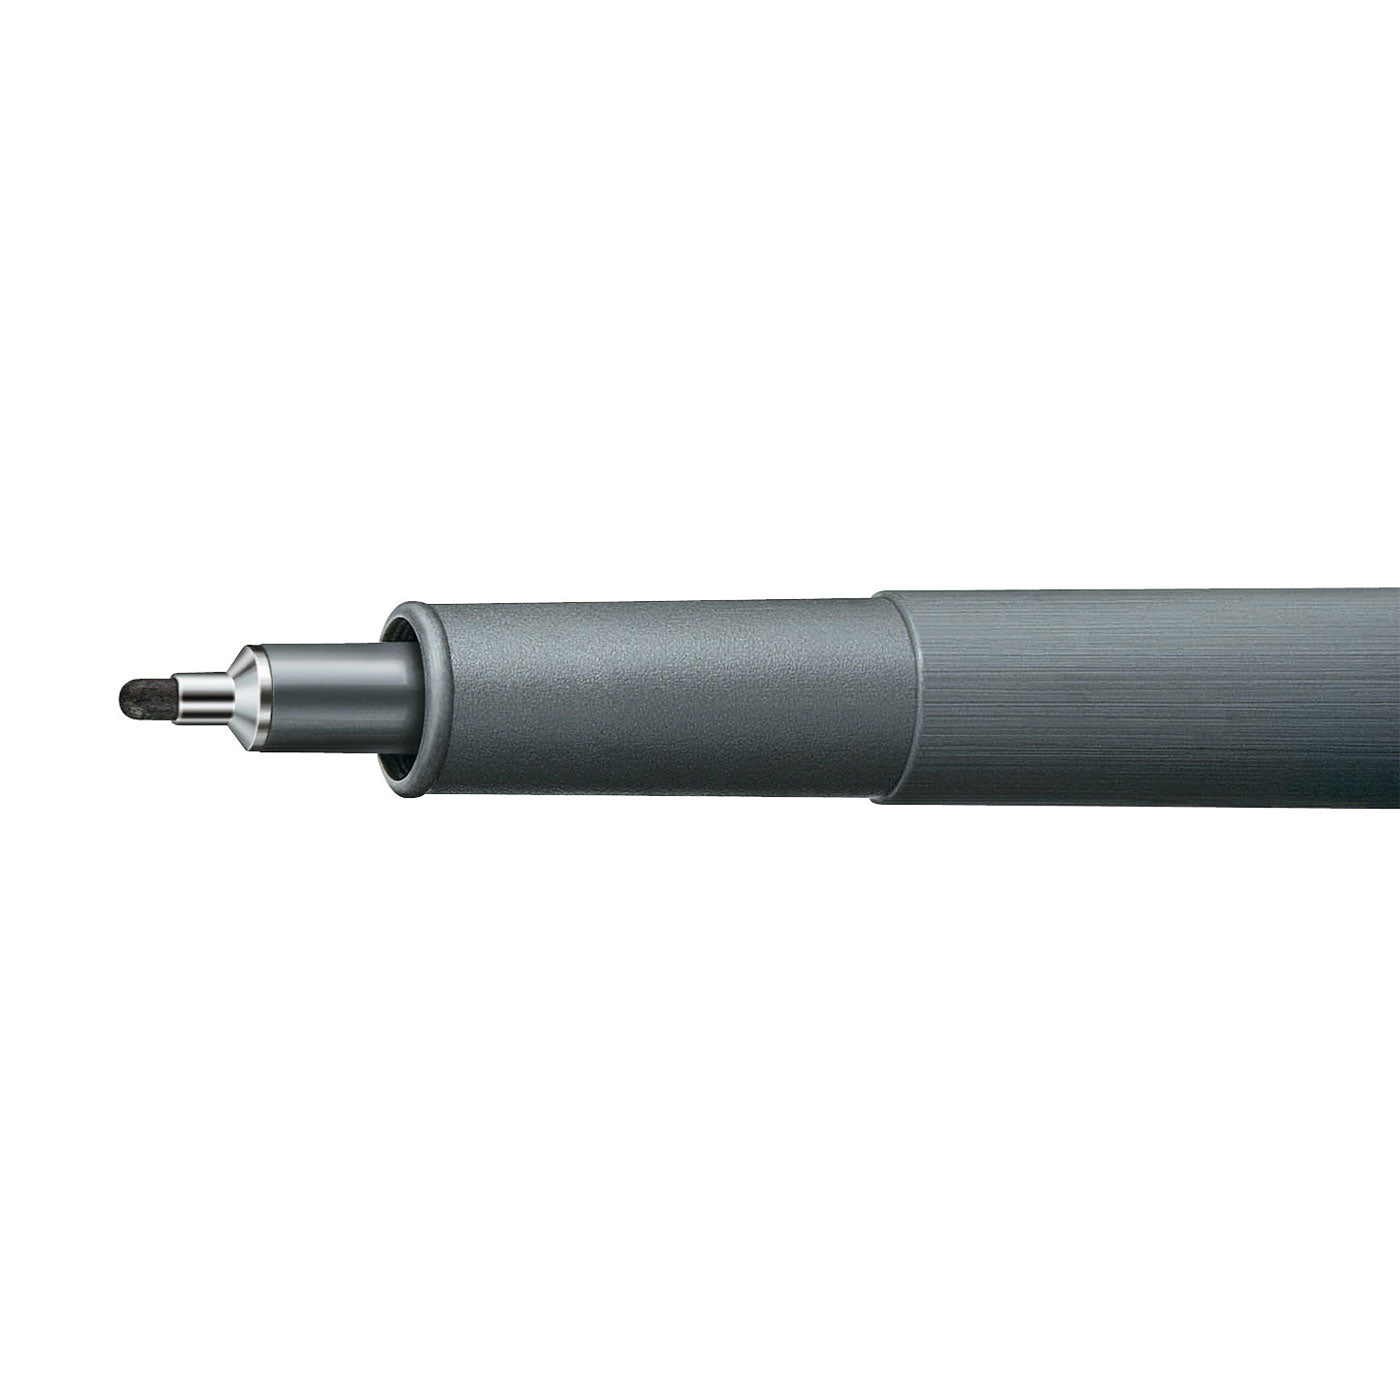 Staedtler Marsgraphic Fineliner Pigment Ink Pen Black 1.2mm